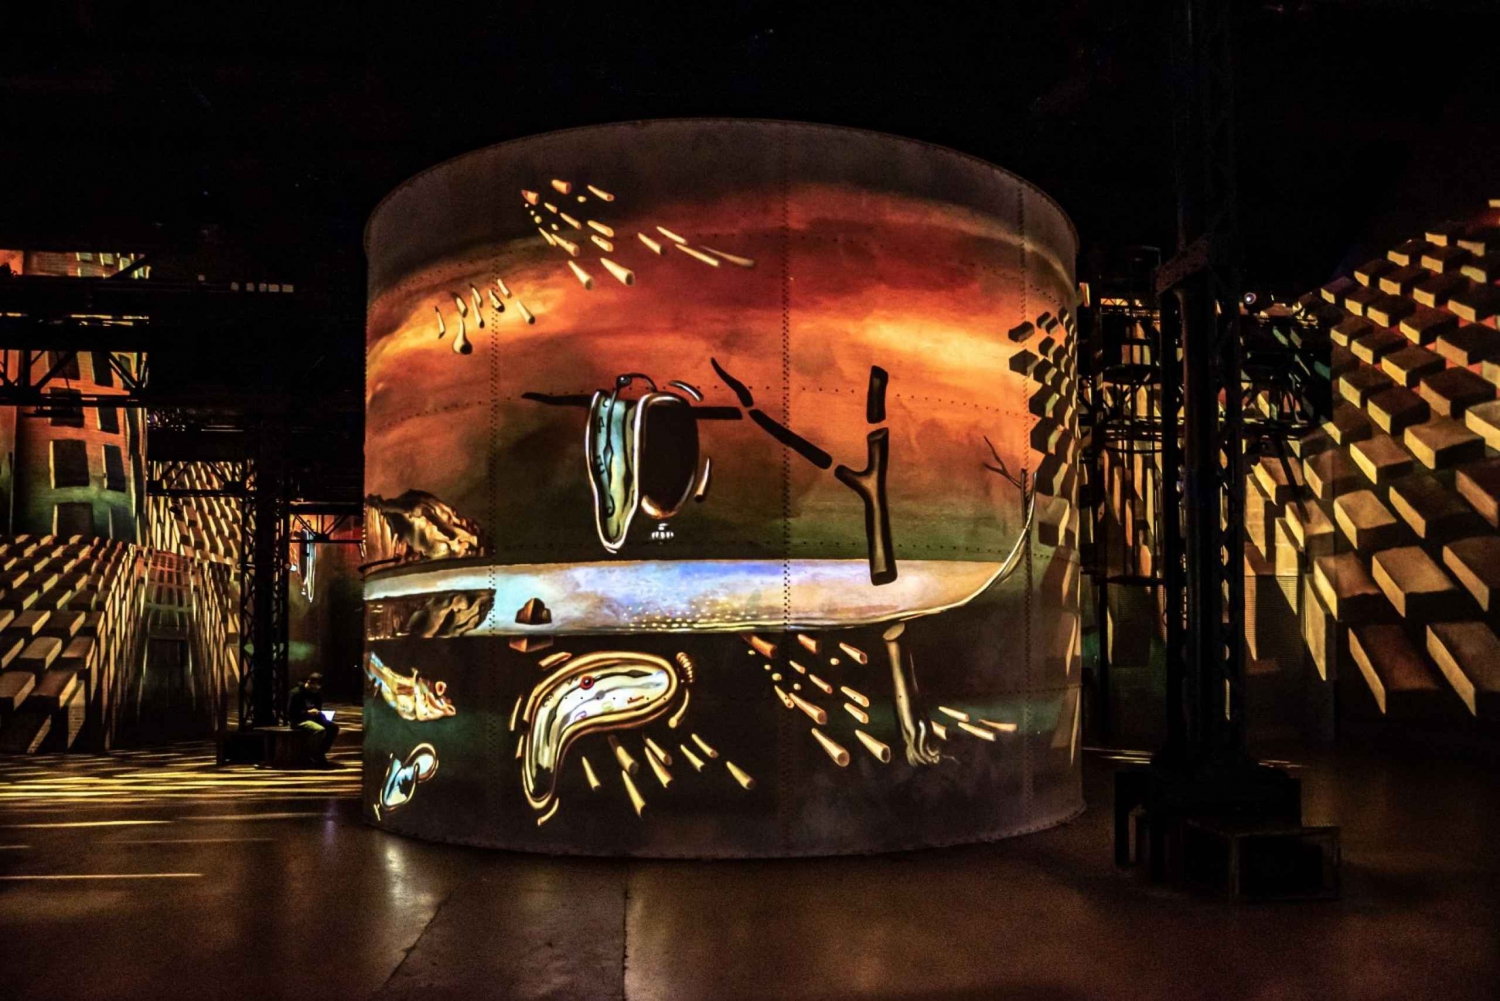 Amsterdam: Fabrique des Lumières Dalí & Gaudí Exhibit Ticket